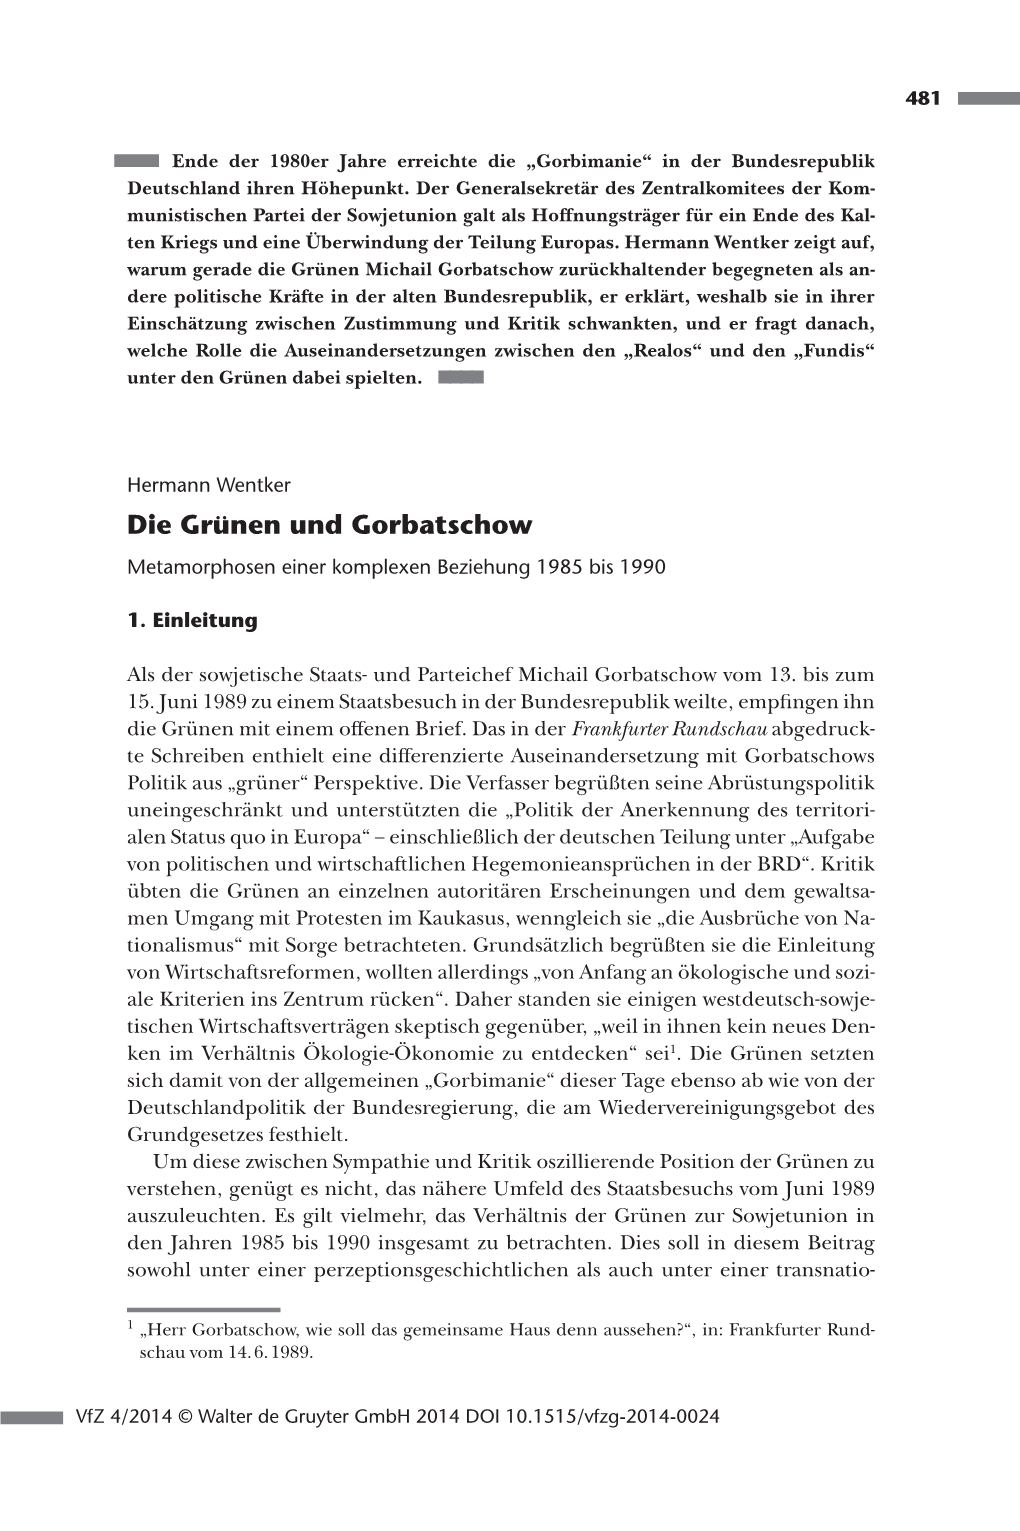 Die Grünen Und Gorbatschow Metamorphosen Einer Komplexen Beziehung 1985 Bis 1990